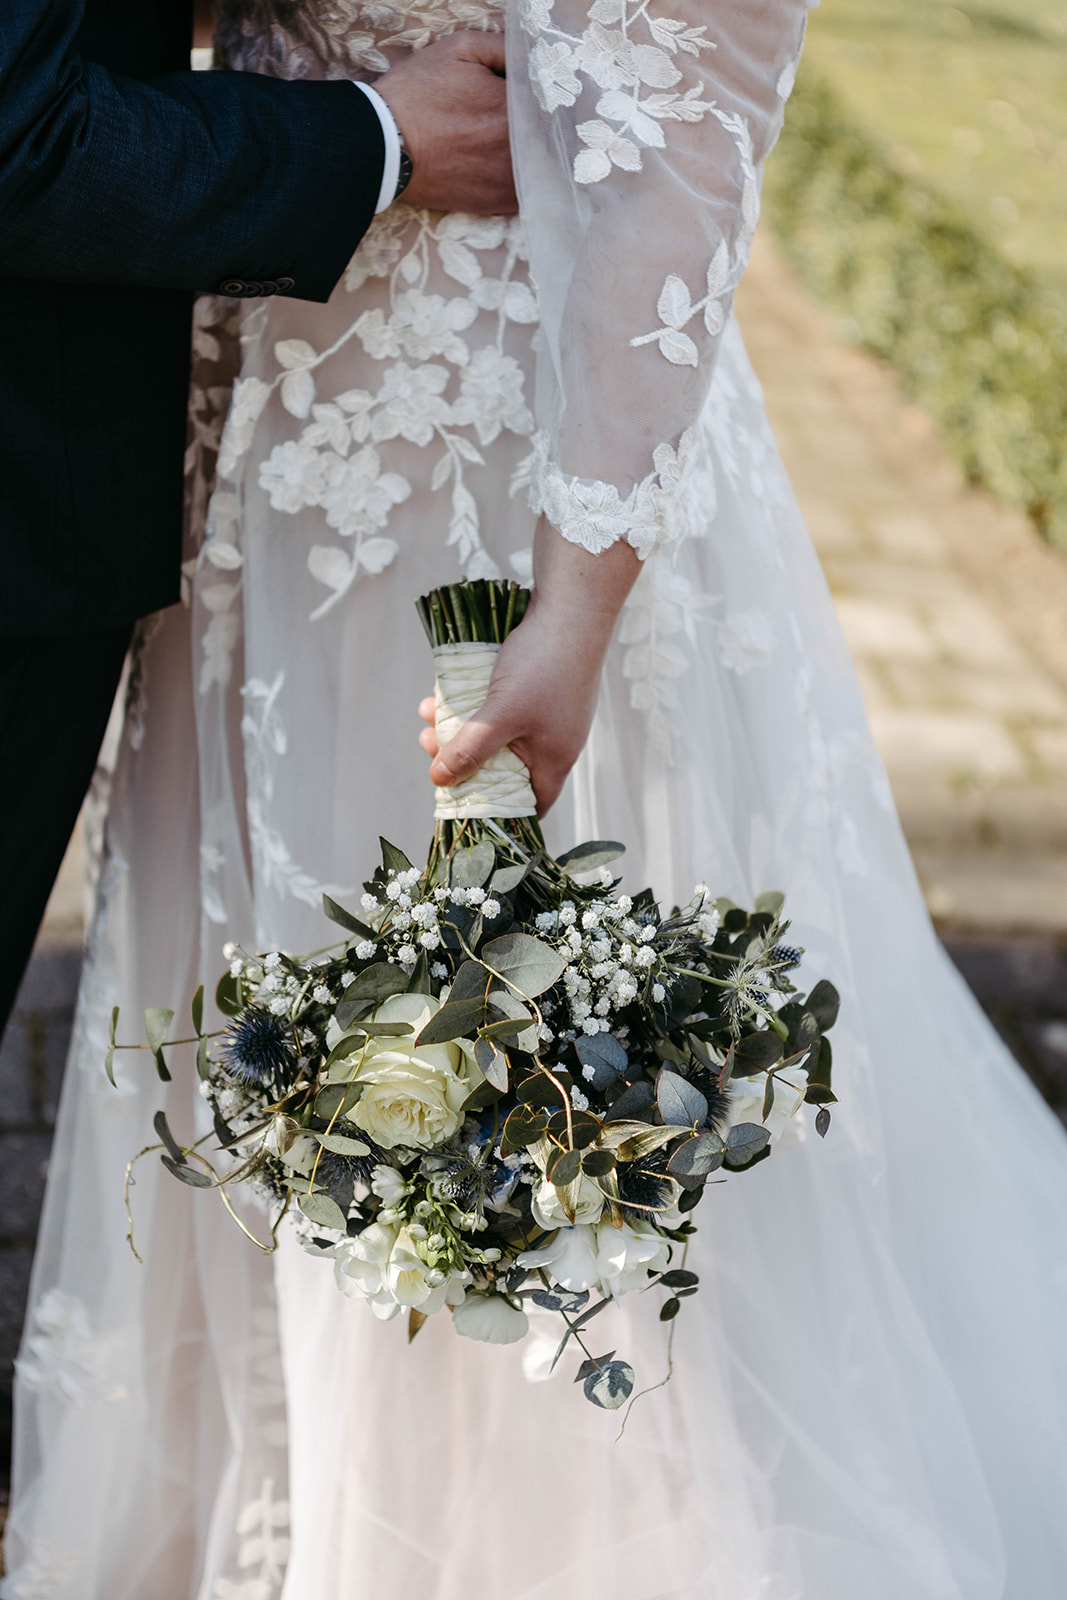 Harmonisches Arrangement: Der Brautstrauß setzt einen blumigen Akzent vor dem eleganten Brautkleid im Schloss Jägersburg